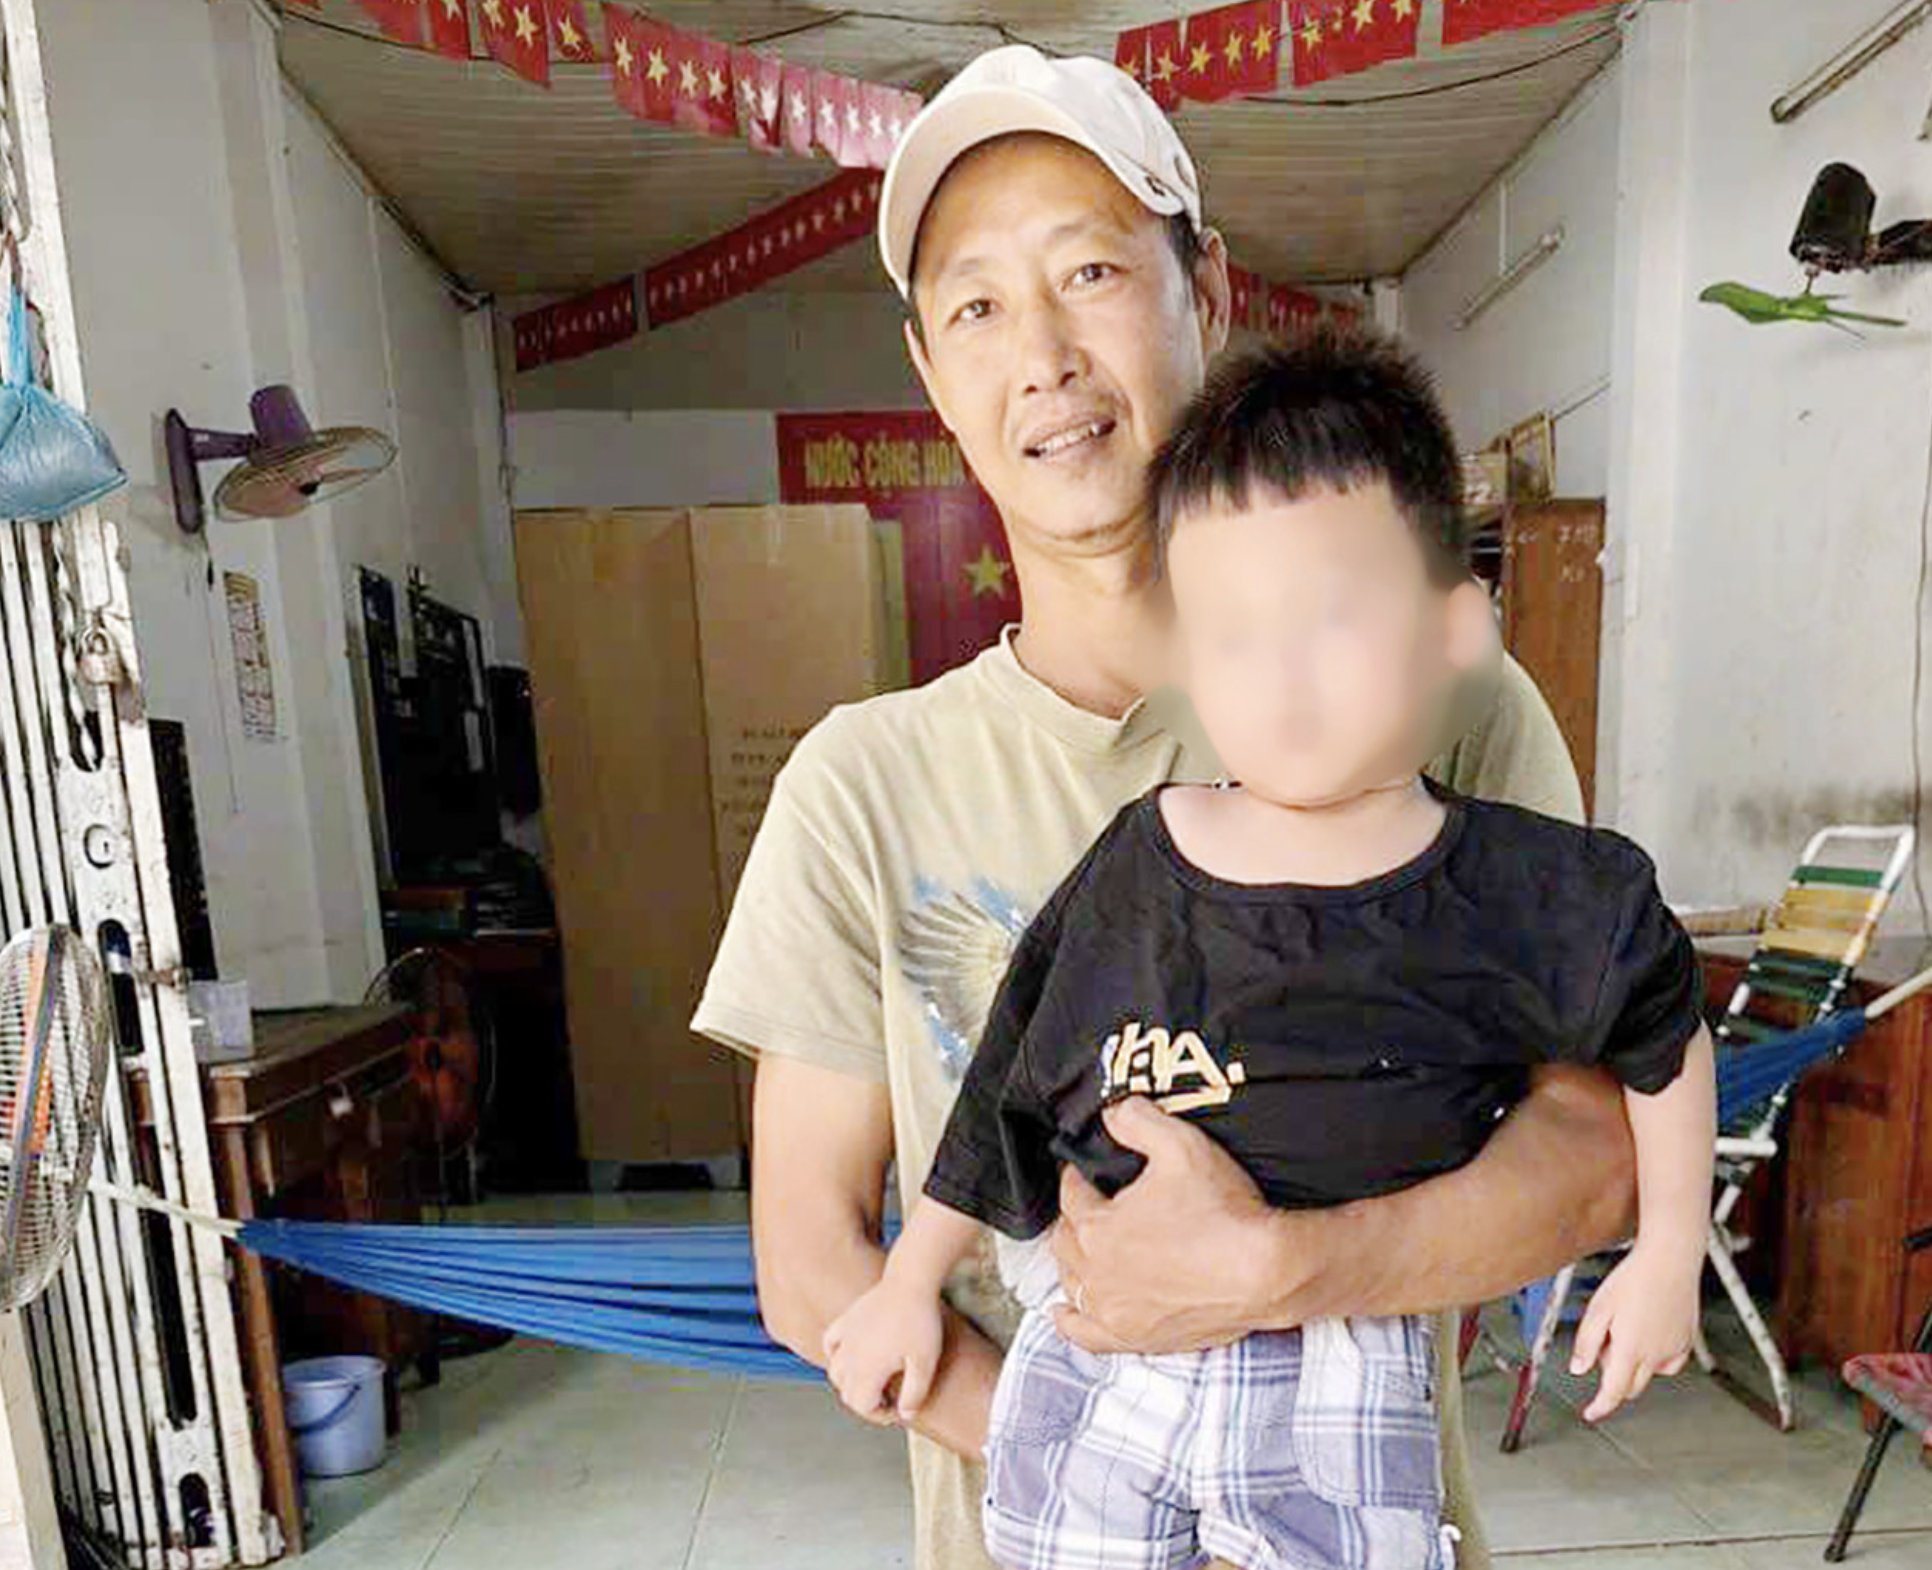 Cha con ông Bùi Ngọc Thọ (63 tuổi) và Bùi Hữu Thành (39 tuổi, cùng ngụ phường Phước Long, quận Ô Môn, TP. Cần Thơ) kịp thời cứu cháu K